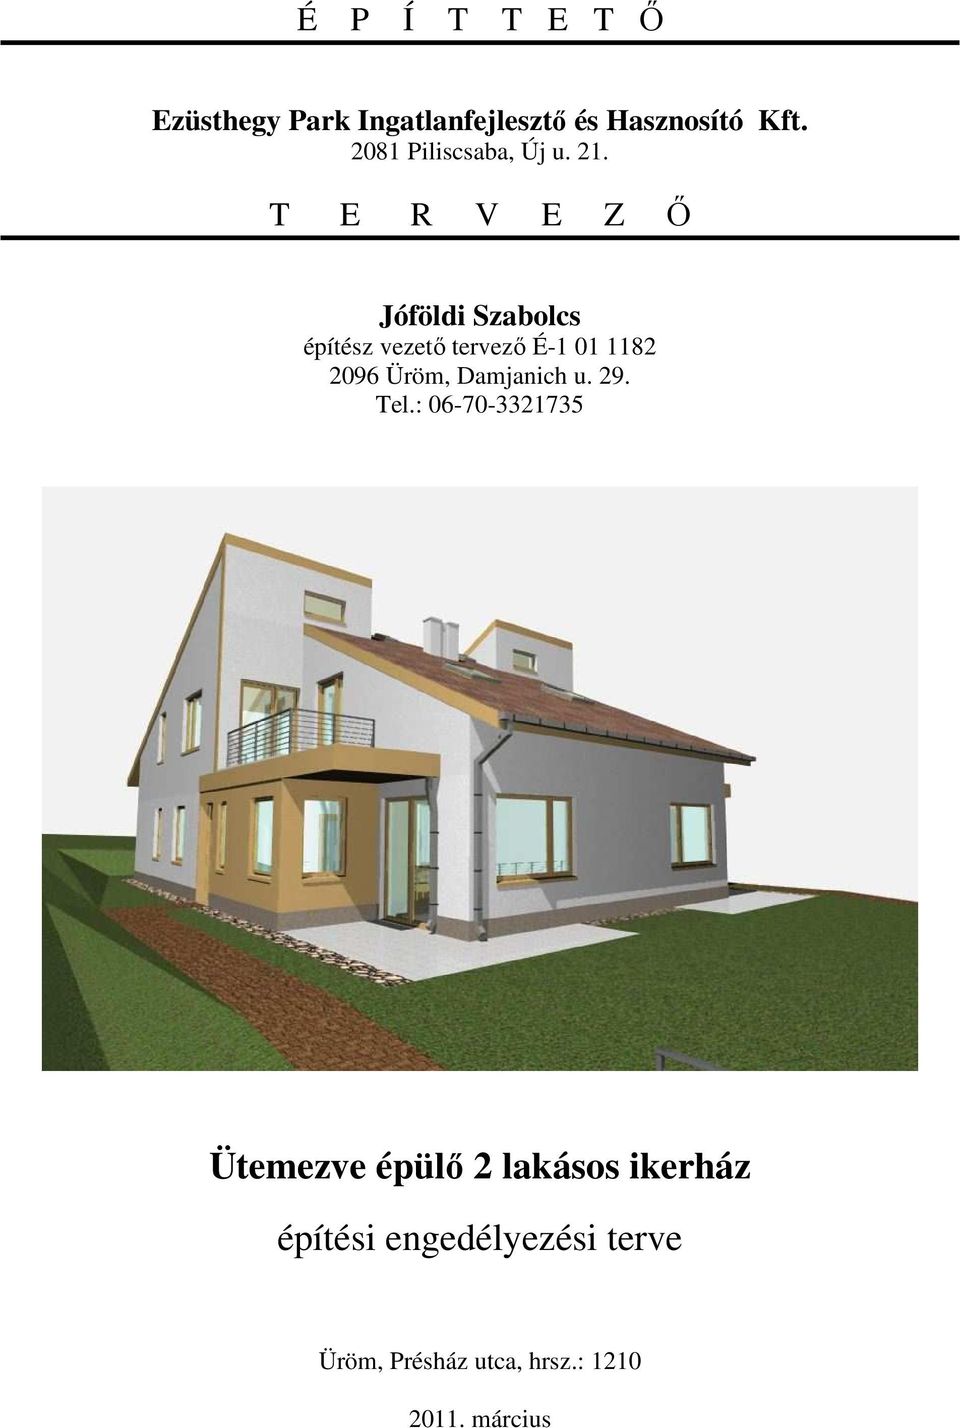 Ütemezve épülı 2 lakásos ikerház építési engedélyezési terve - PDF Ingyenes  letöltés